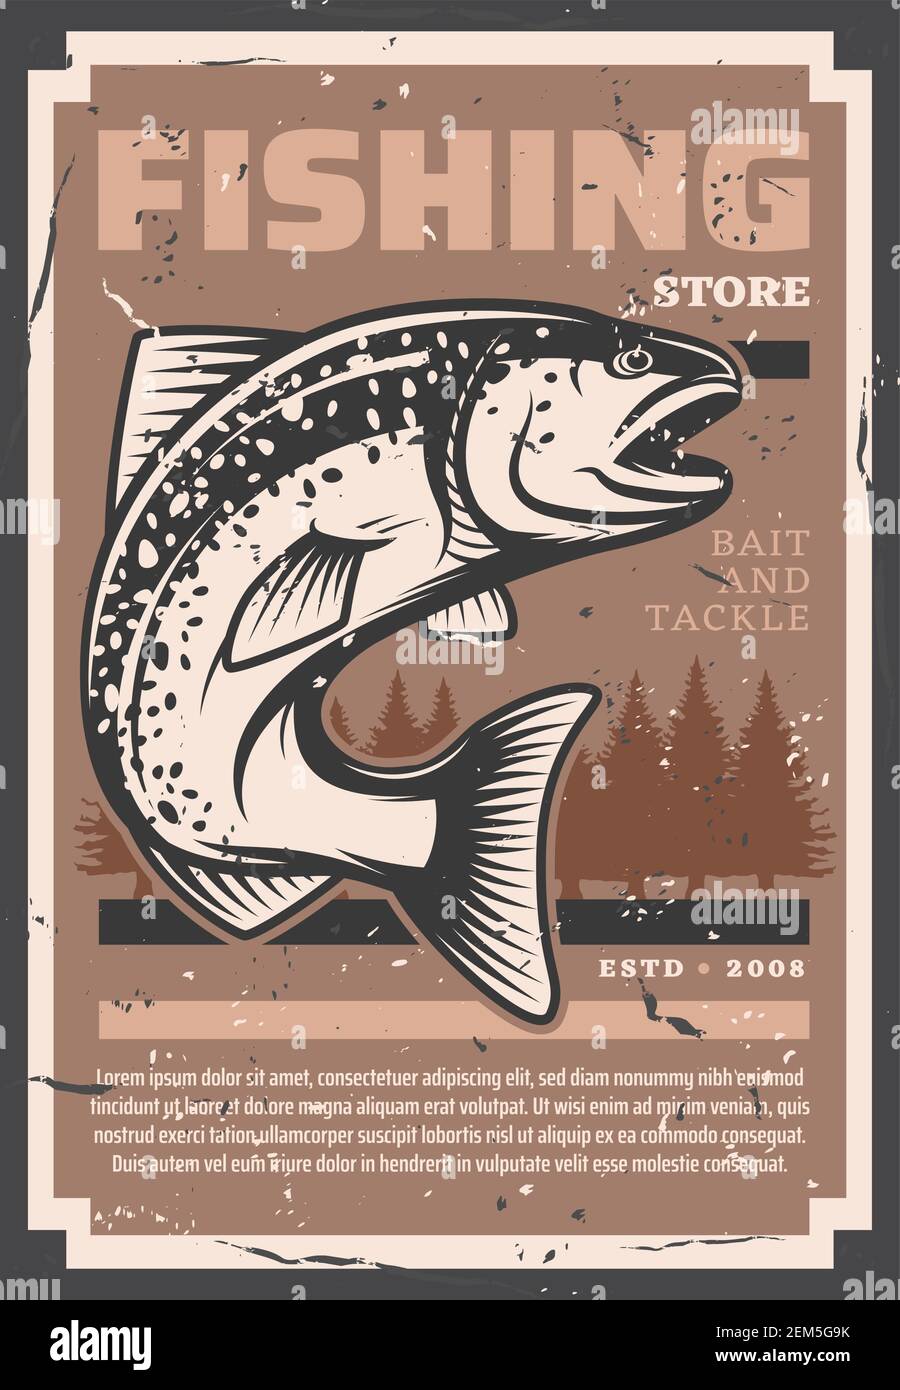 Pesca de salmón y trucha, pesca de pescado y equipo de pesca tienda retro  vintage grunge poster. Vector de las cañas de la pesca, tackles y señuelos,  tienda de cebos para ri